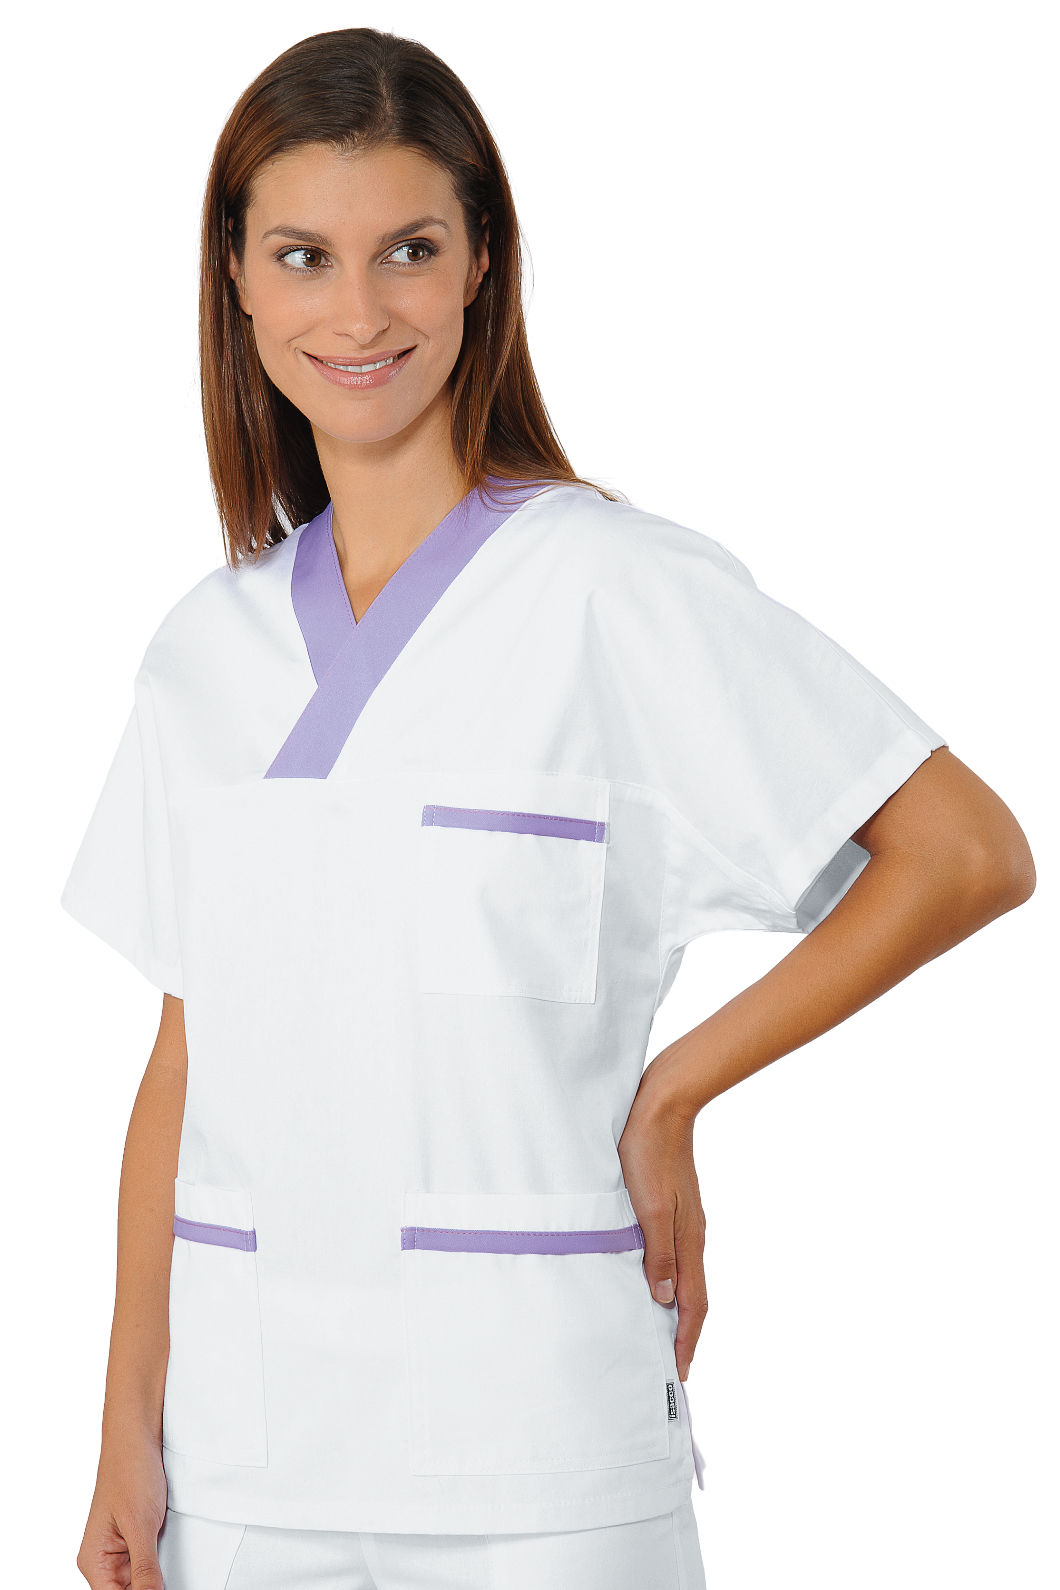 Casacca infermiere profilo colorato – Mod. 045.206